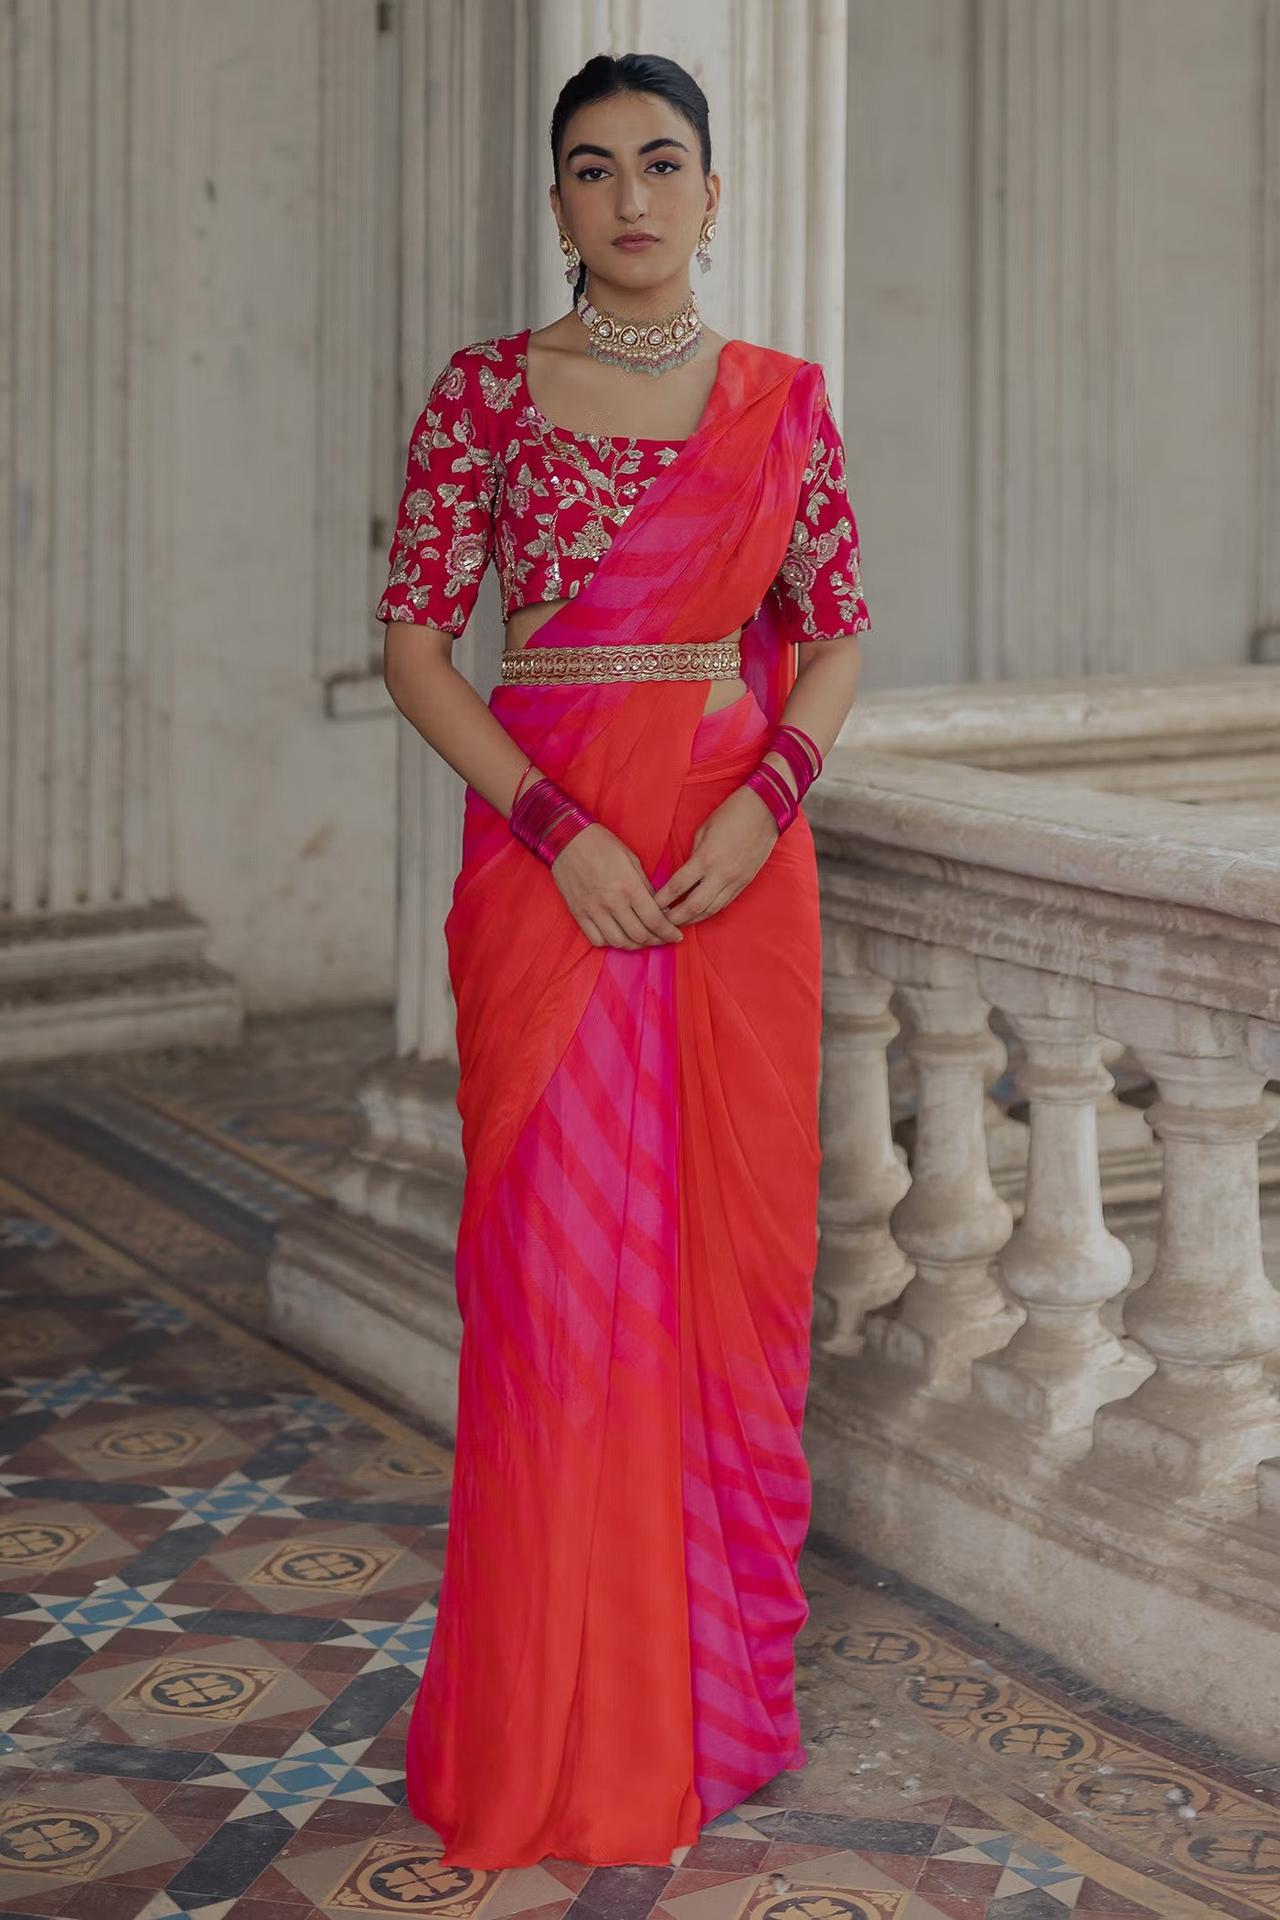 Regina Cassandra in WeaveinIndia saree | Fashionworldhub